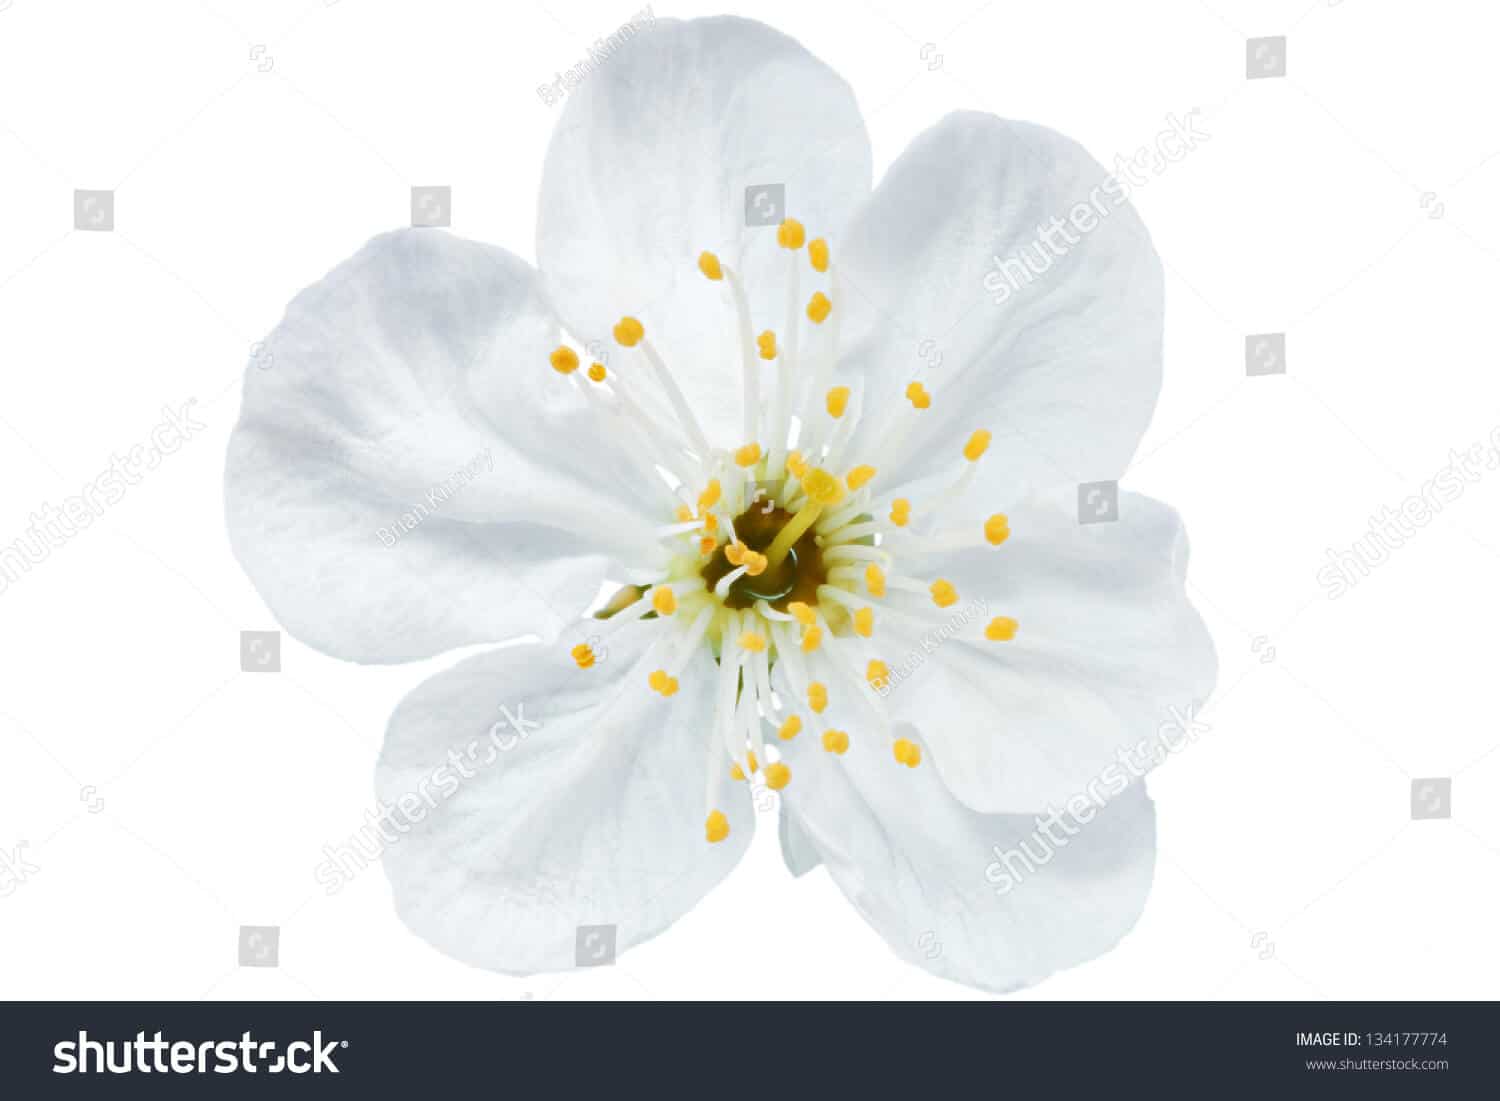 63 ngàn hình ảnh hoa mai trắng tuyệt đẹp chất lượng cao trên Shutterstock